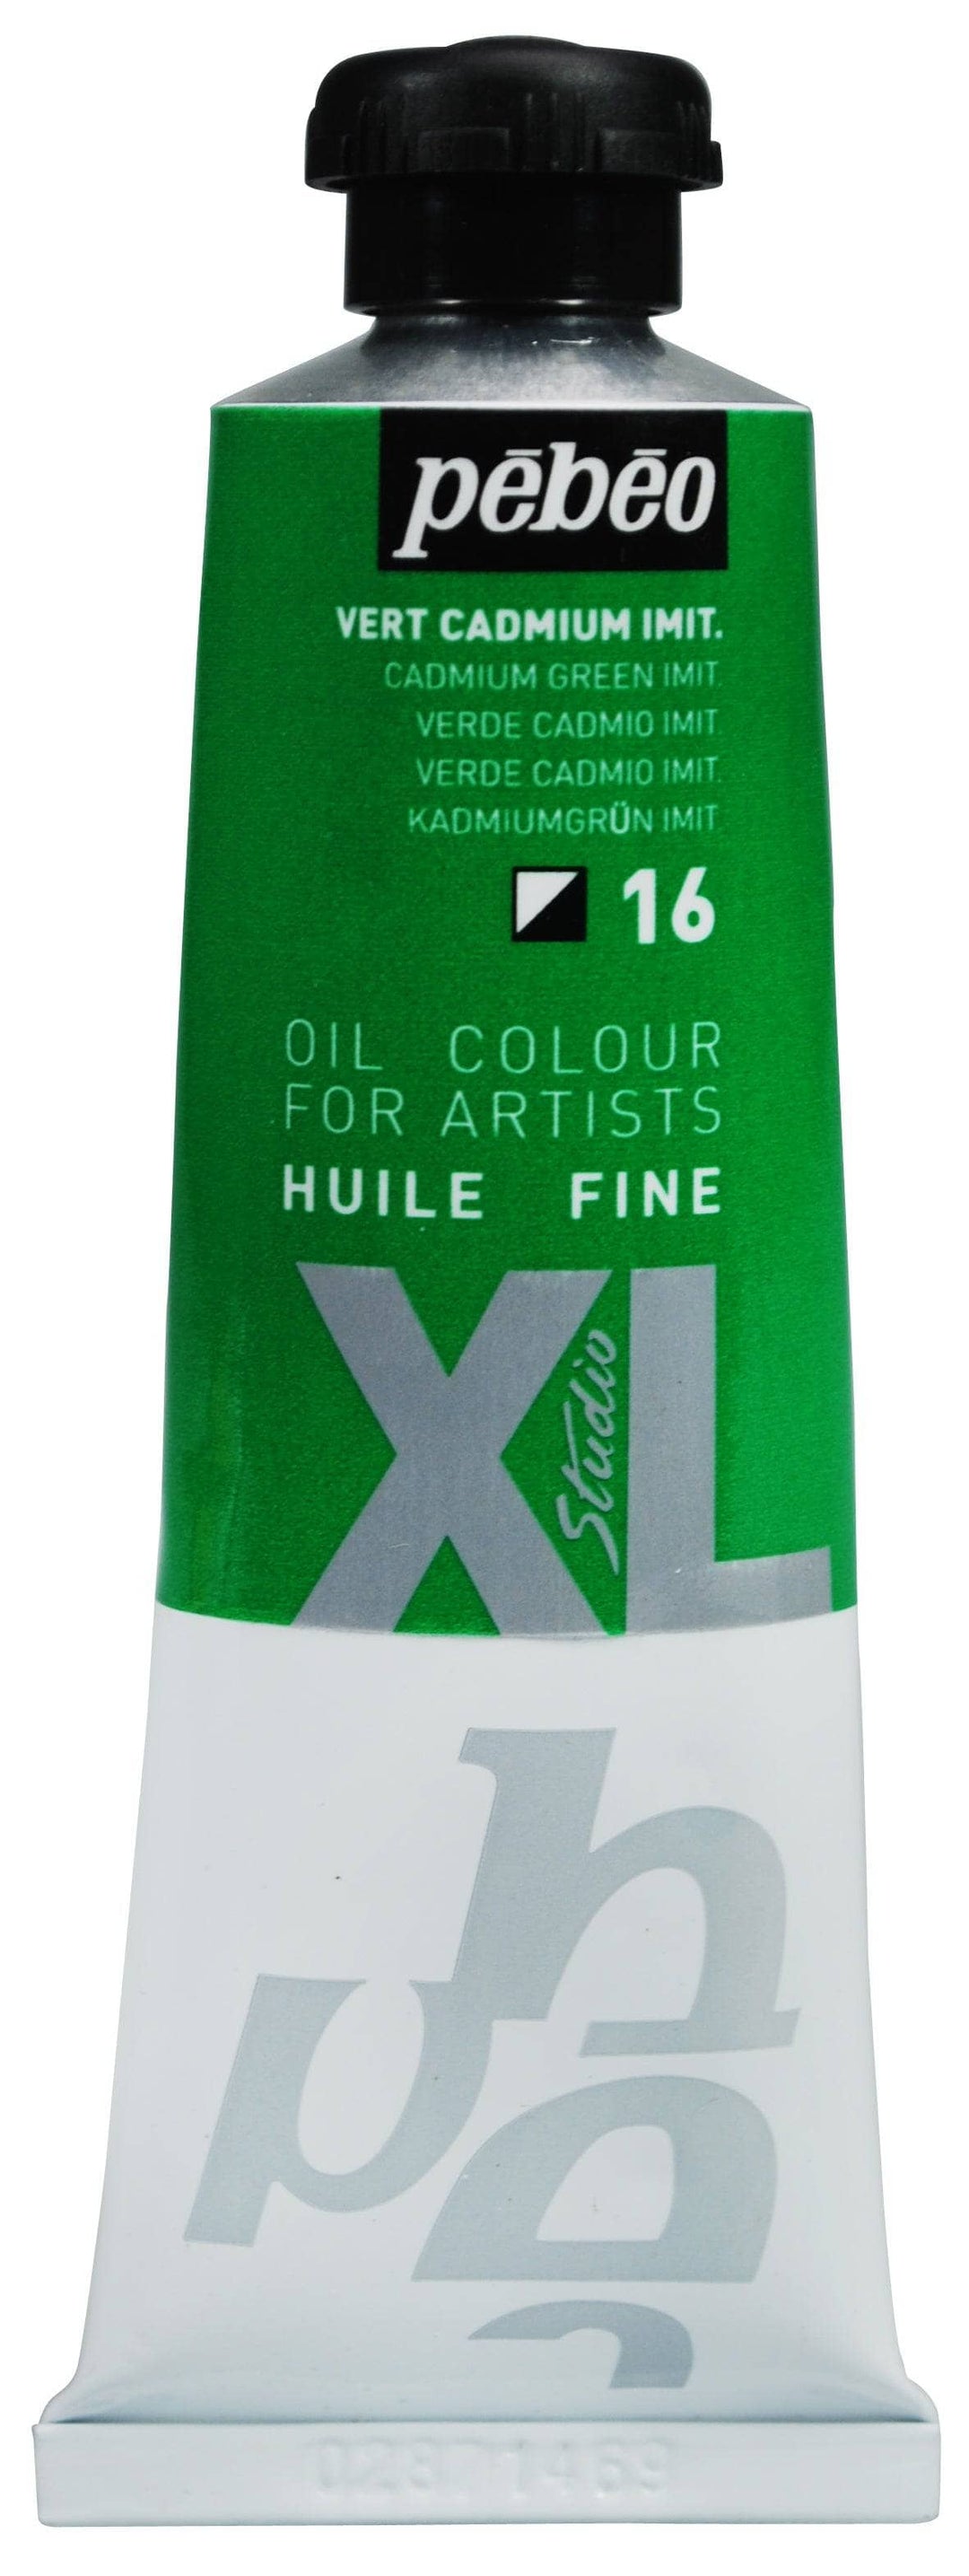 Huile fine Studio XL 37ml - Vert Cadmium Imit.
PB937016